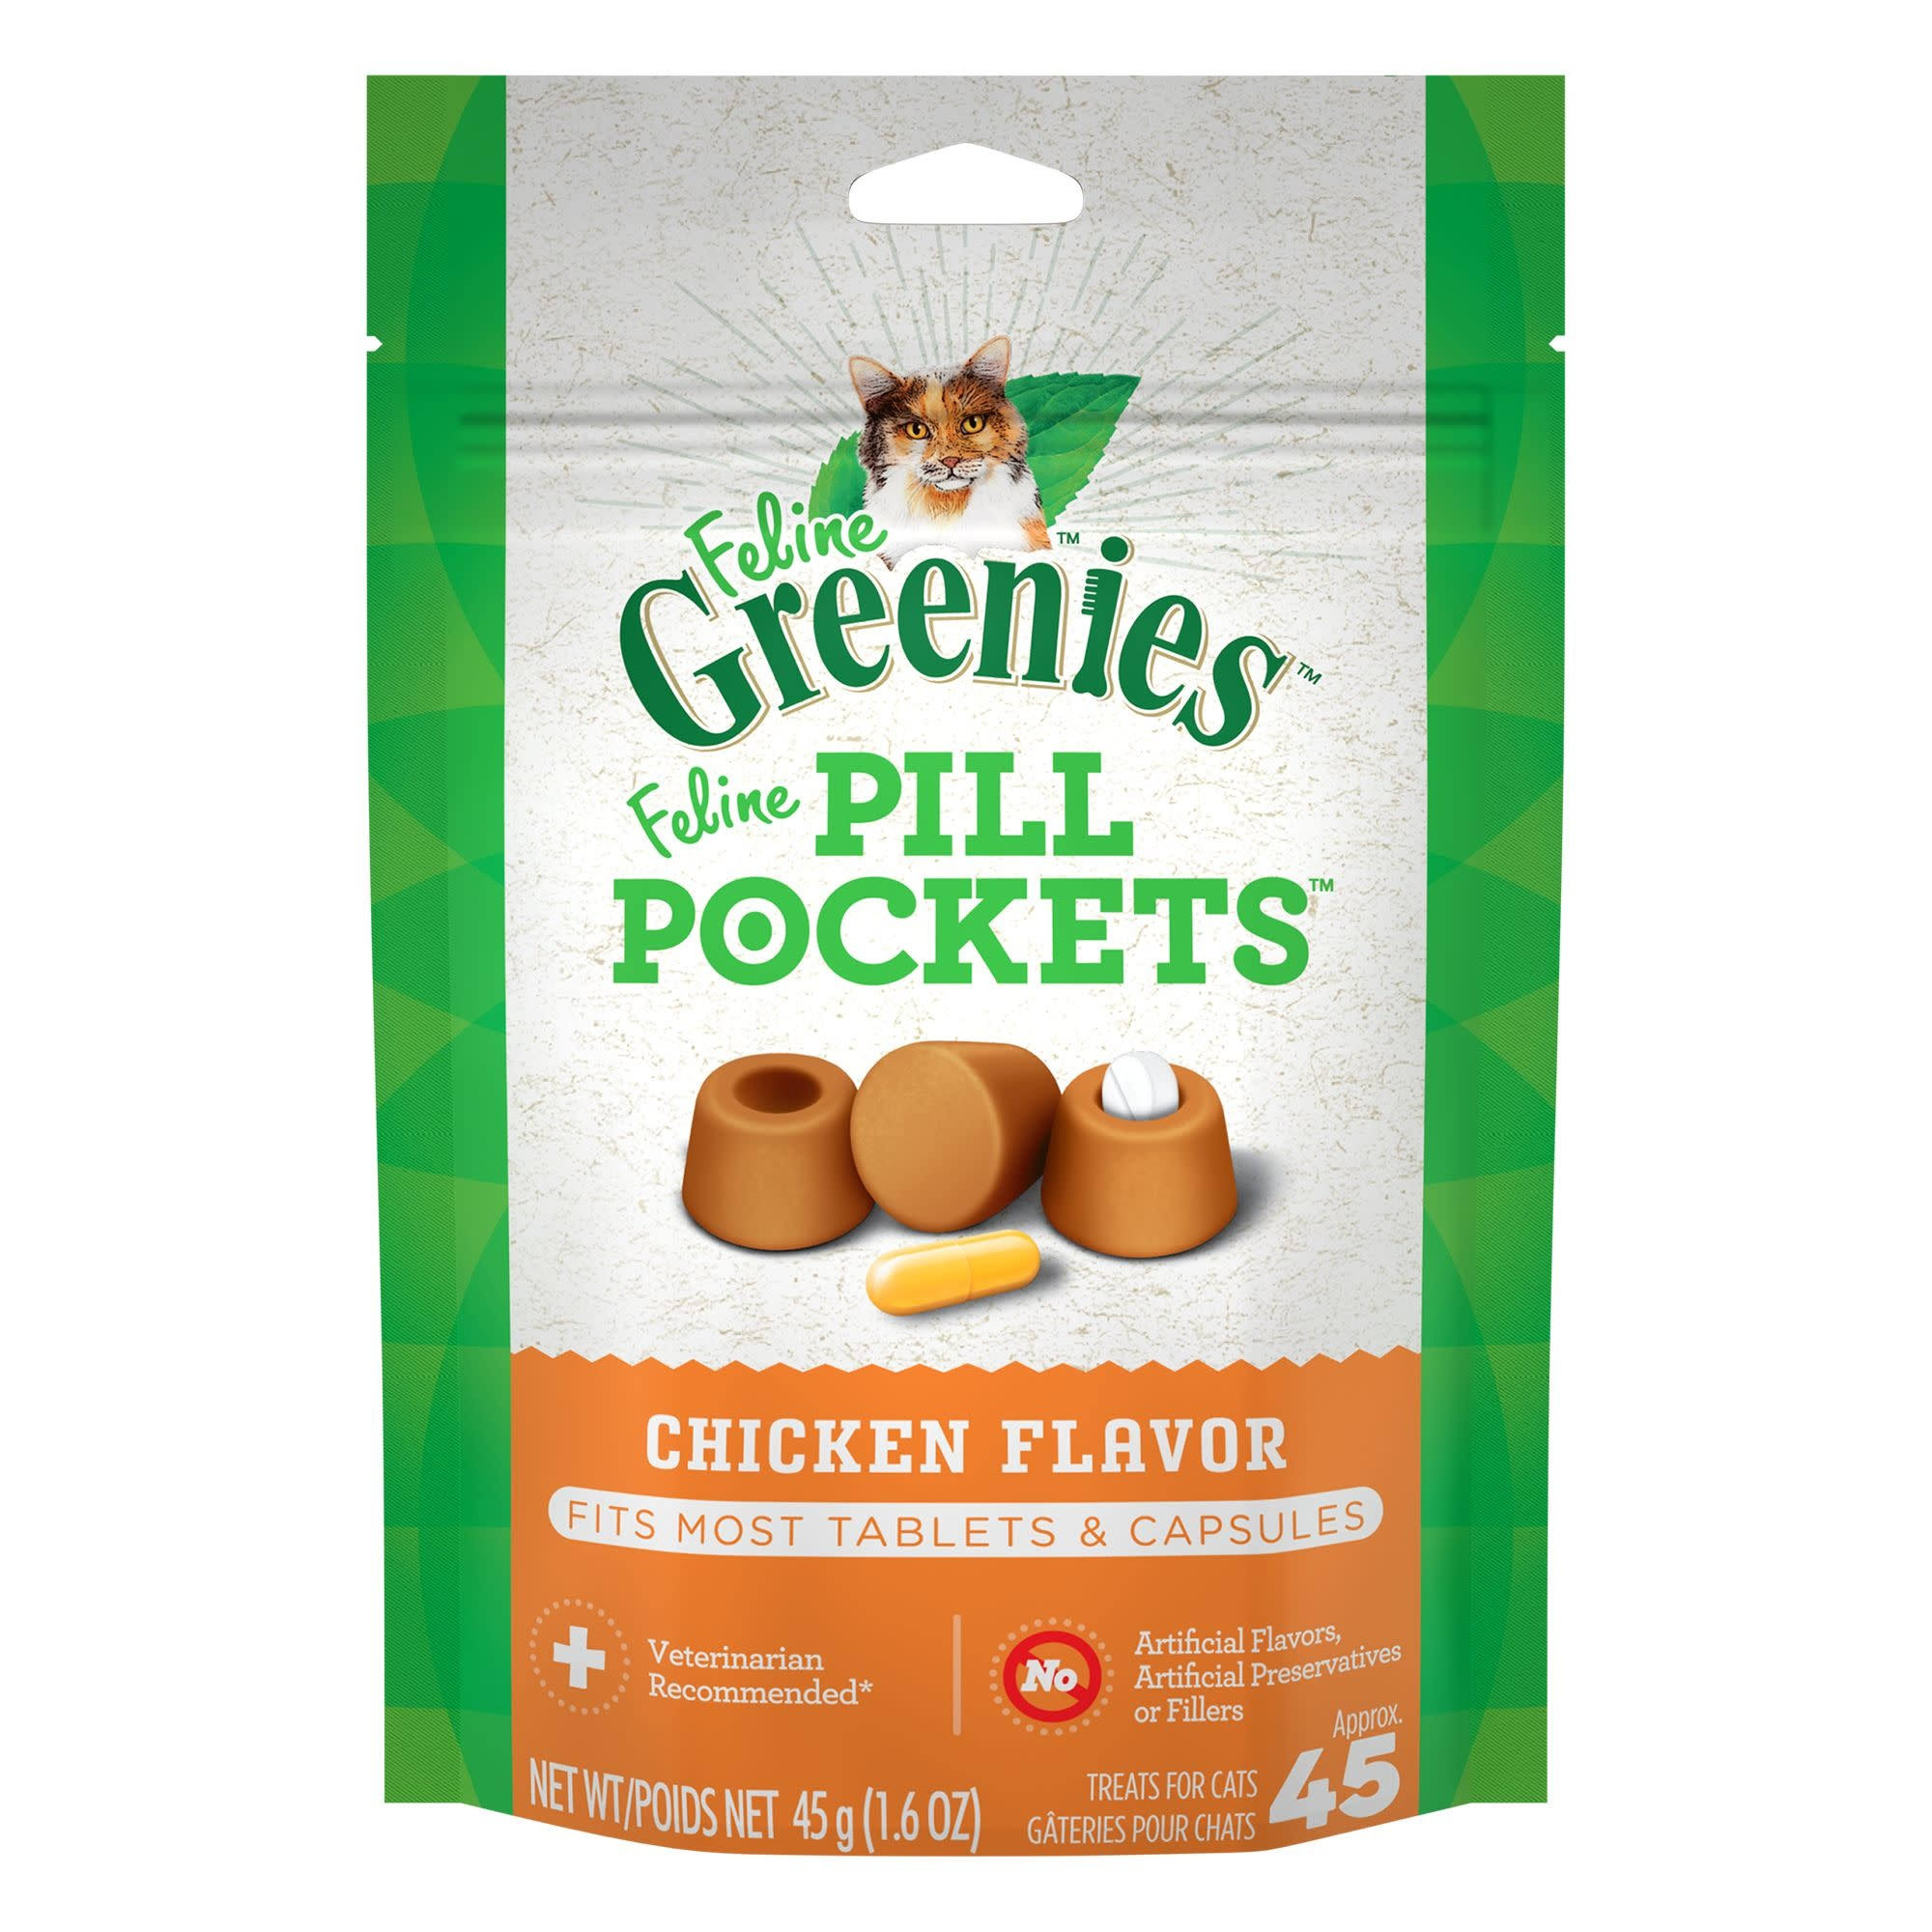 Feline Greenies Pill Pockets Treats for Cats - Chicken Flavor, 1.6oz, 45 Treats